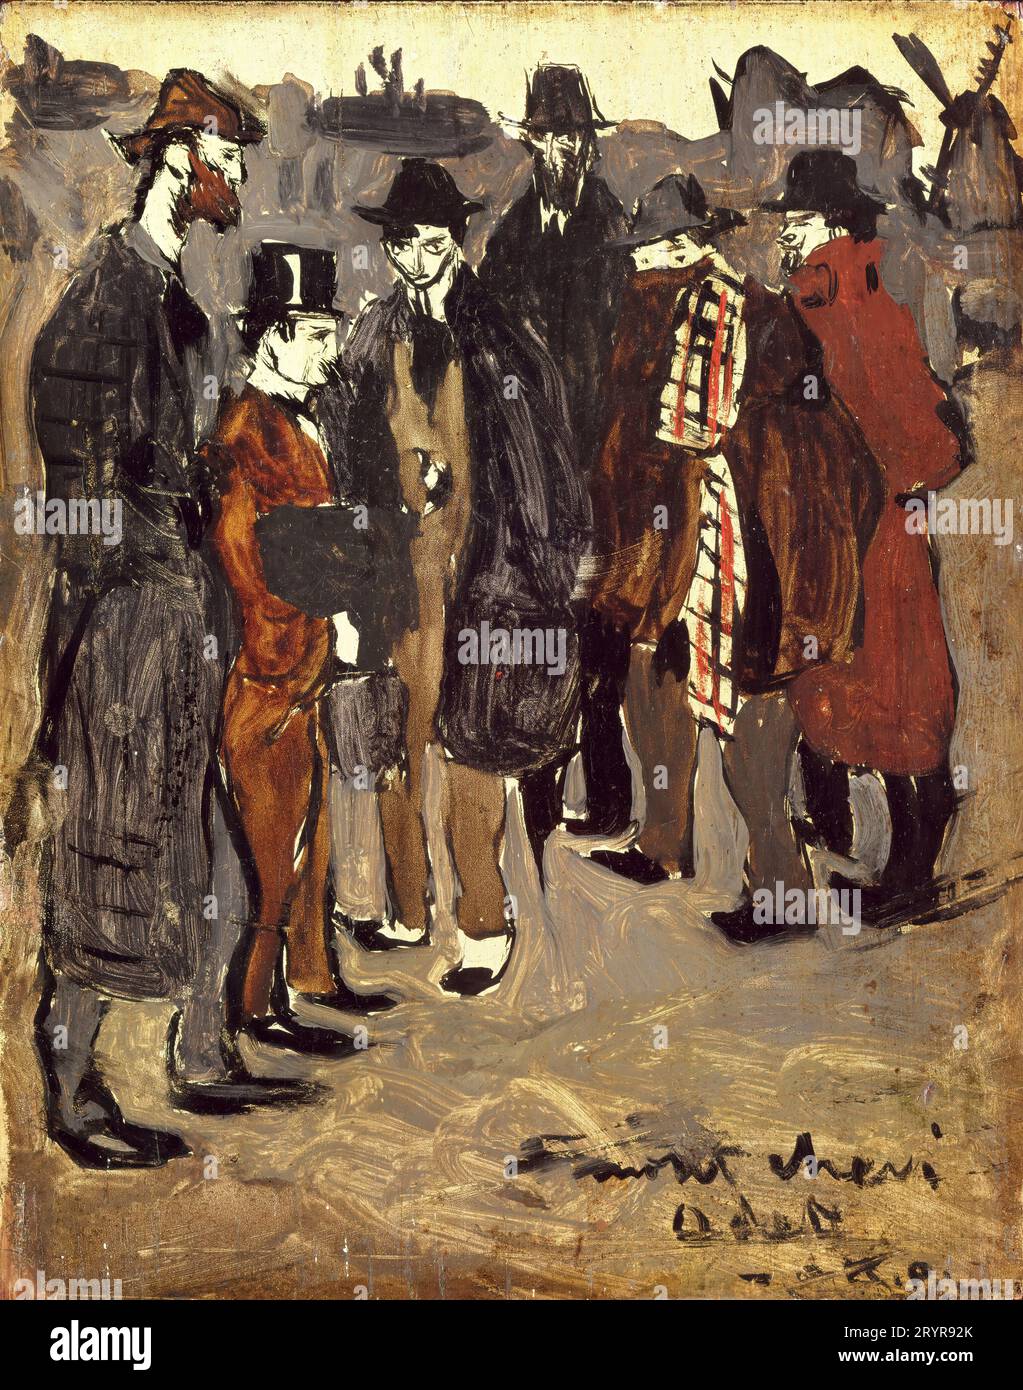 Pablo Picasso/ gruppo di catalani a Montmartre: Pichot, Mañach, Casagemas, Brossa, Picasso, e Gener, 1900. Olio sul pannello. (24,1 x 18,7 cm). PABLO RUIZ PICASSO. Foto Stock